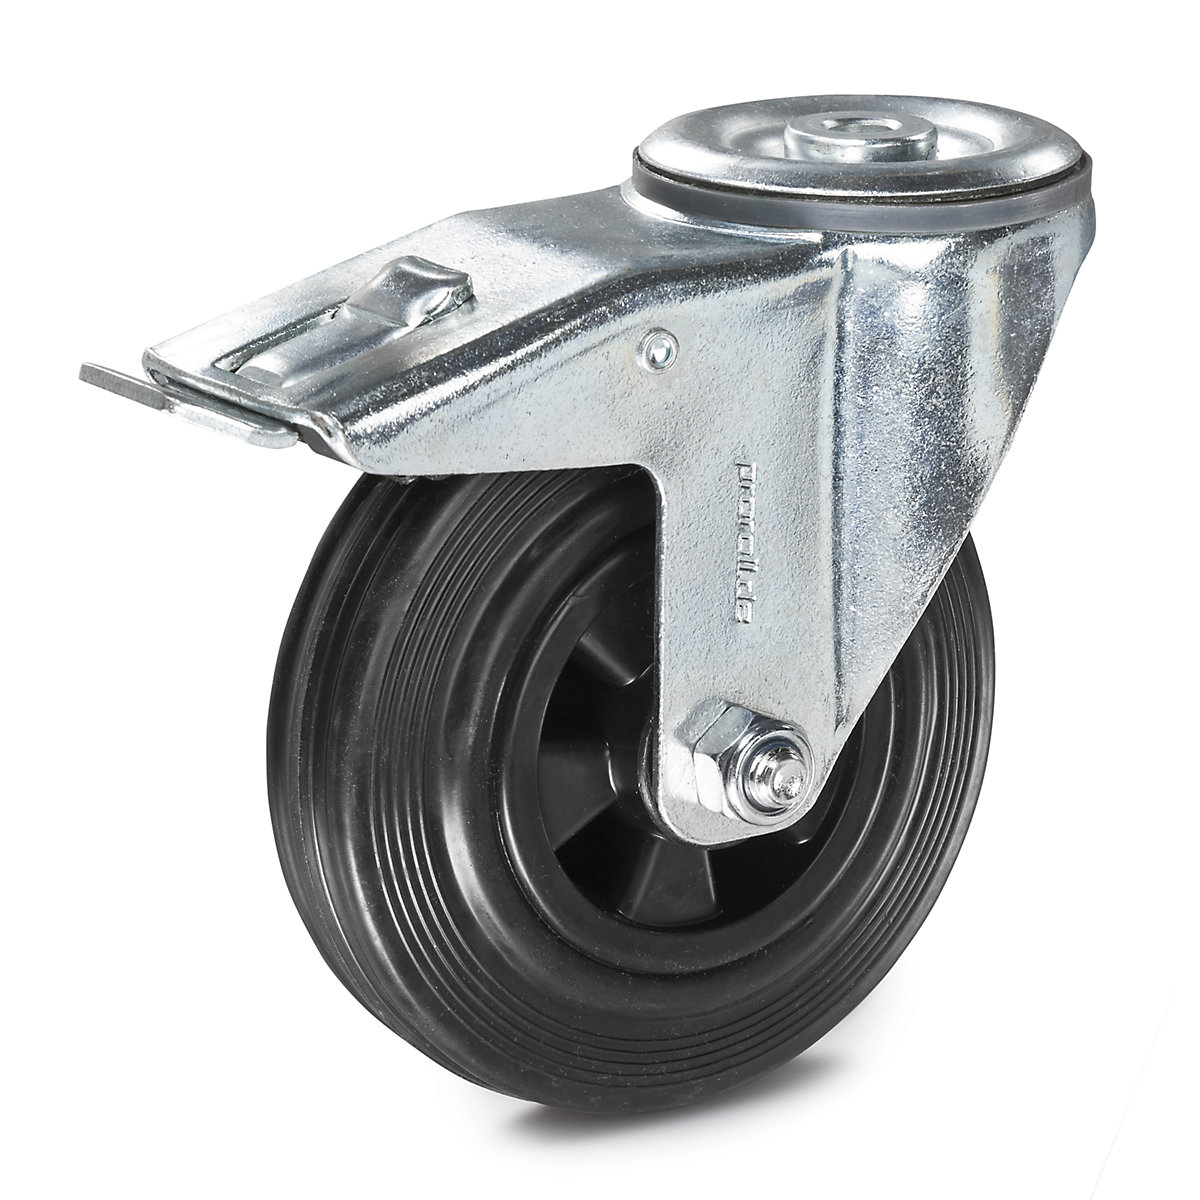 Celogumová obruč na plastovom disku – Proroll, Ø x šírka kolesa 125 x 38 mm, otočné koliesko s dvojitou brzdou-3